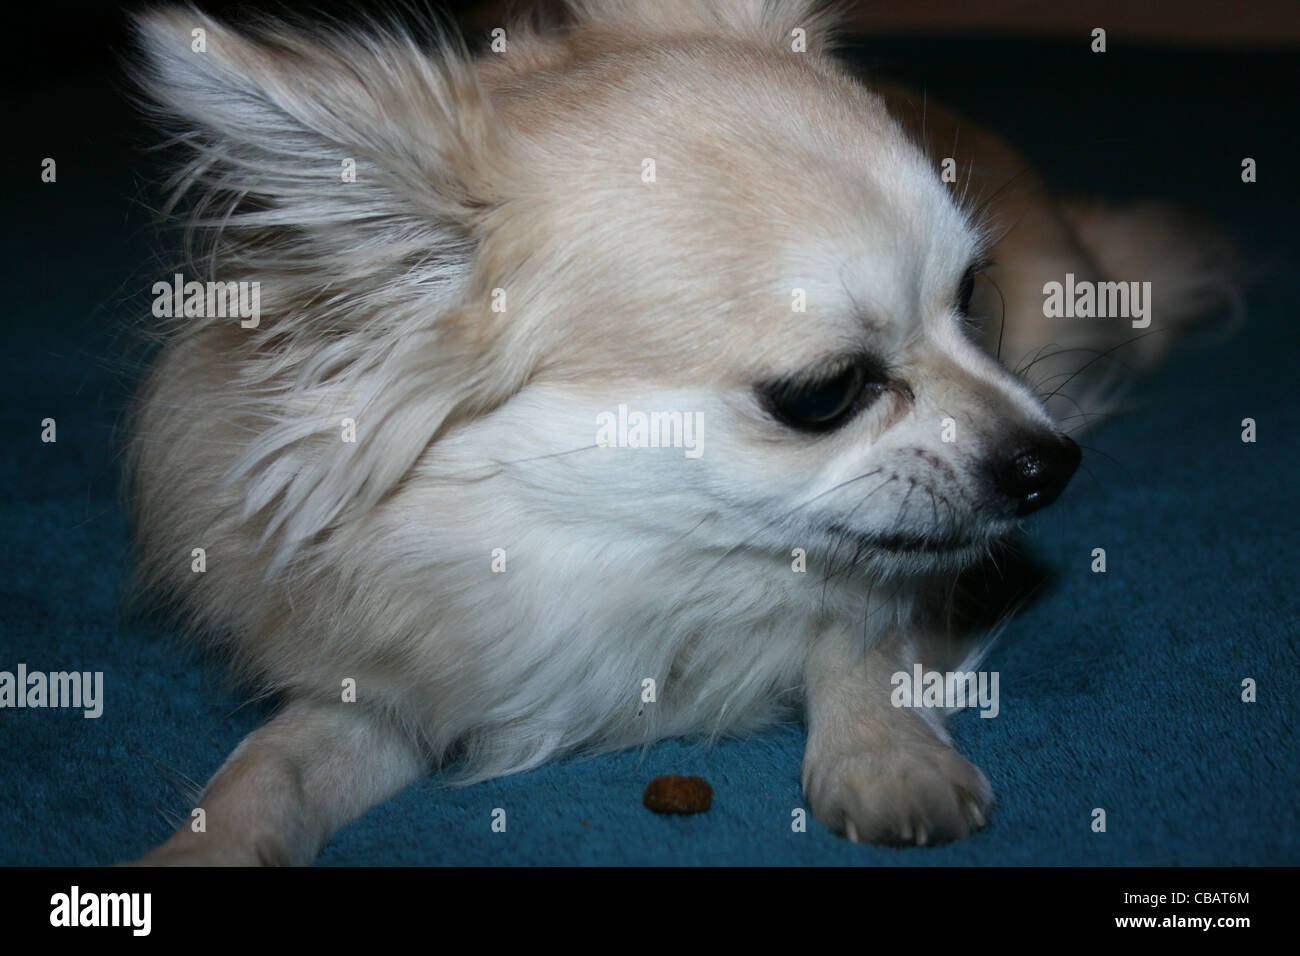 Langhaar Chihuahua oder mexikanische Hund auf blaue Decke hautnah Stockfoto